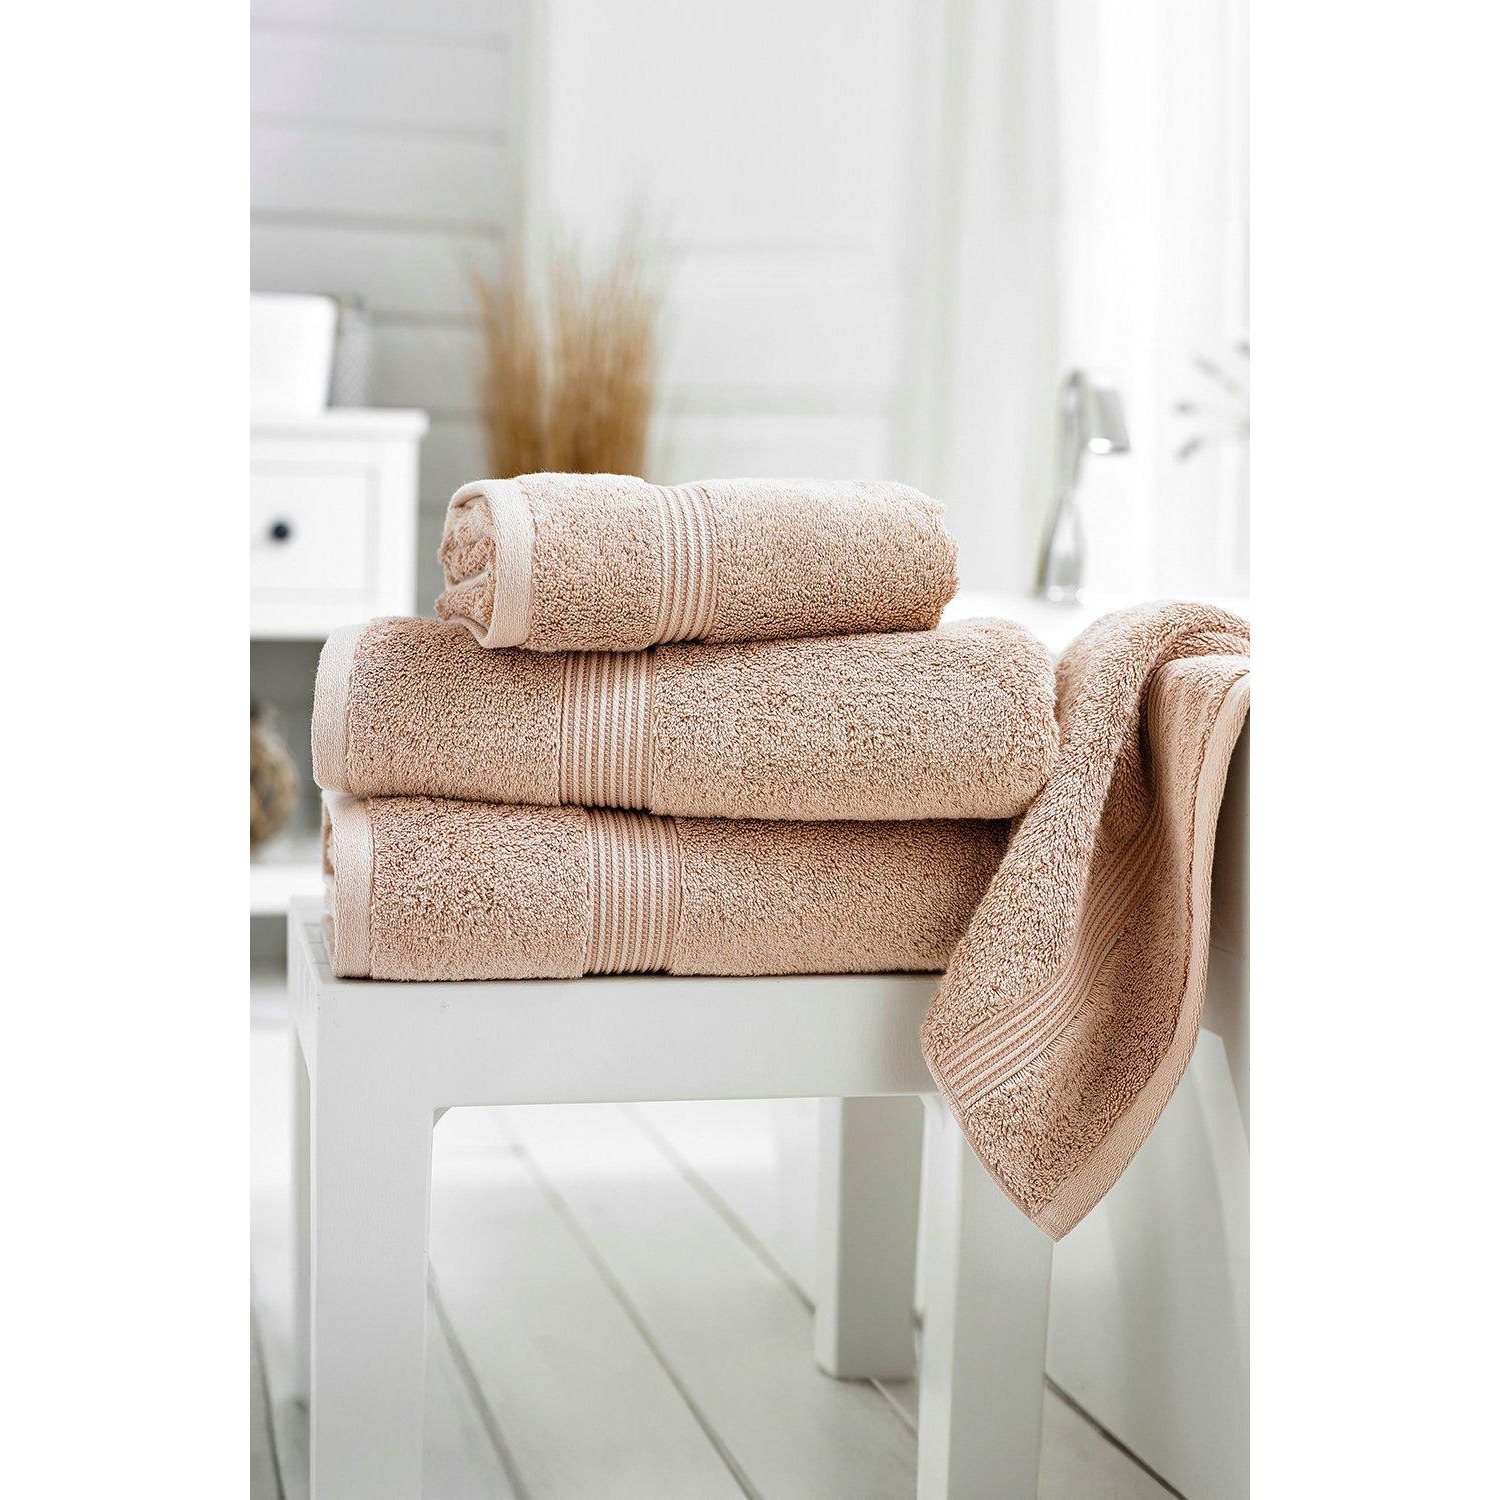 Sanctuary 650gsm Supreme Combed Cotton Towels - image 1